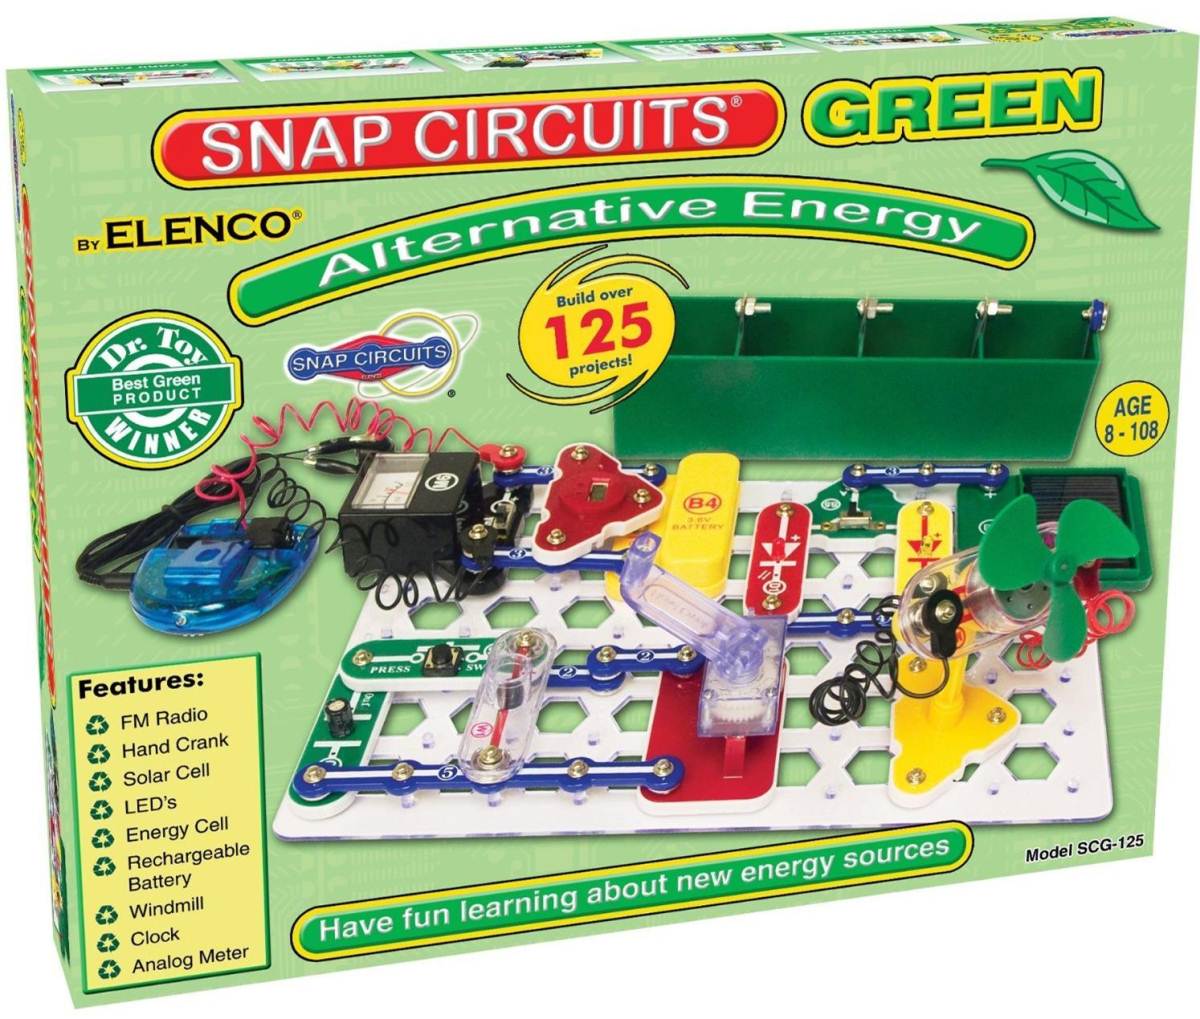 Snap Circuits alternative energy kit. ($46)